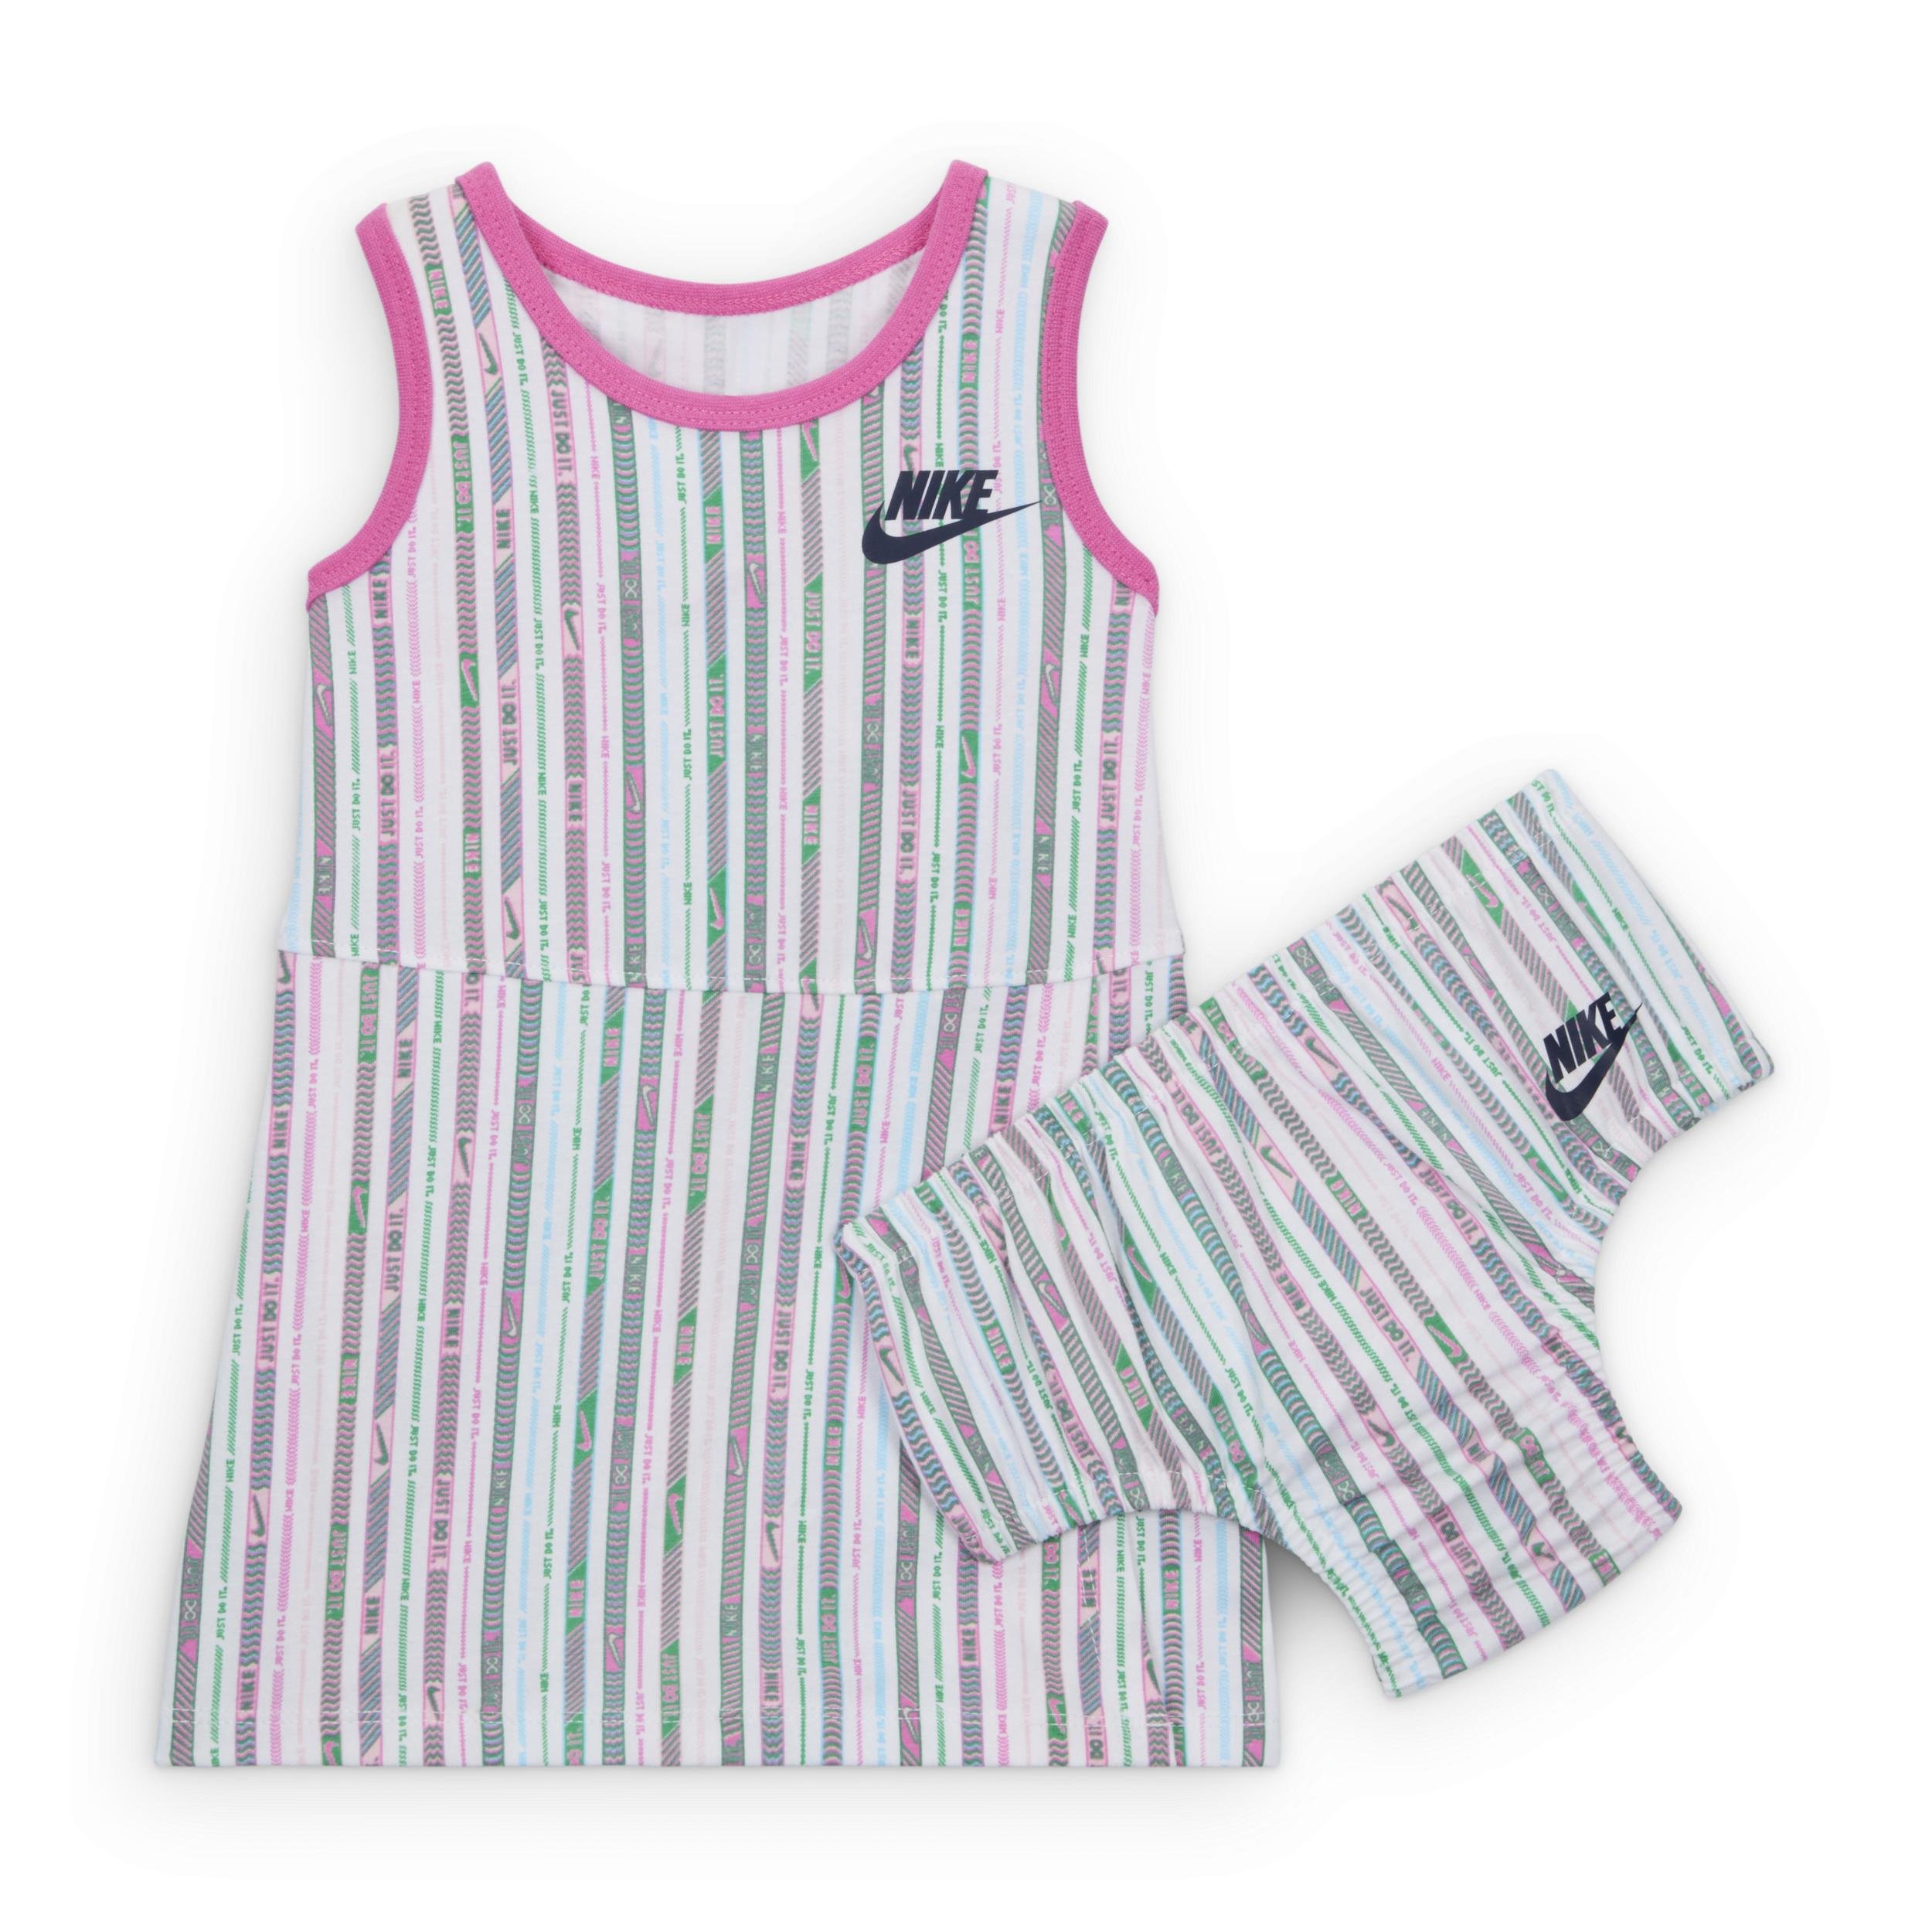 Nike Happy Camper Baby (12-24M) Printed Dress by NIKE